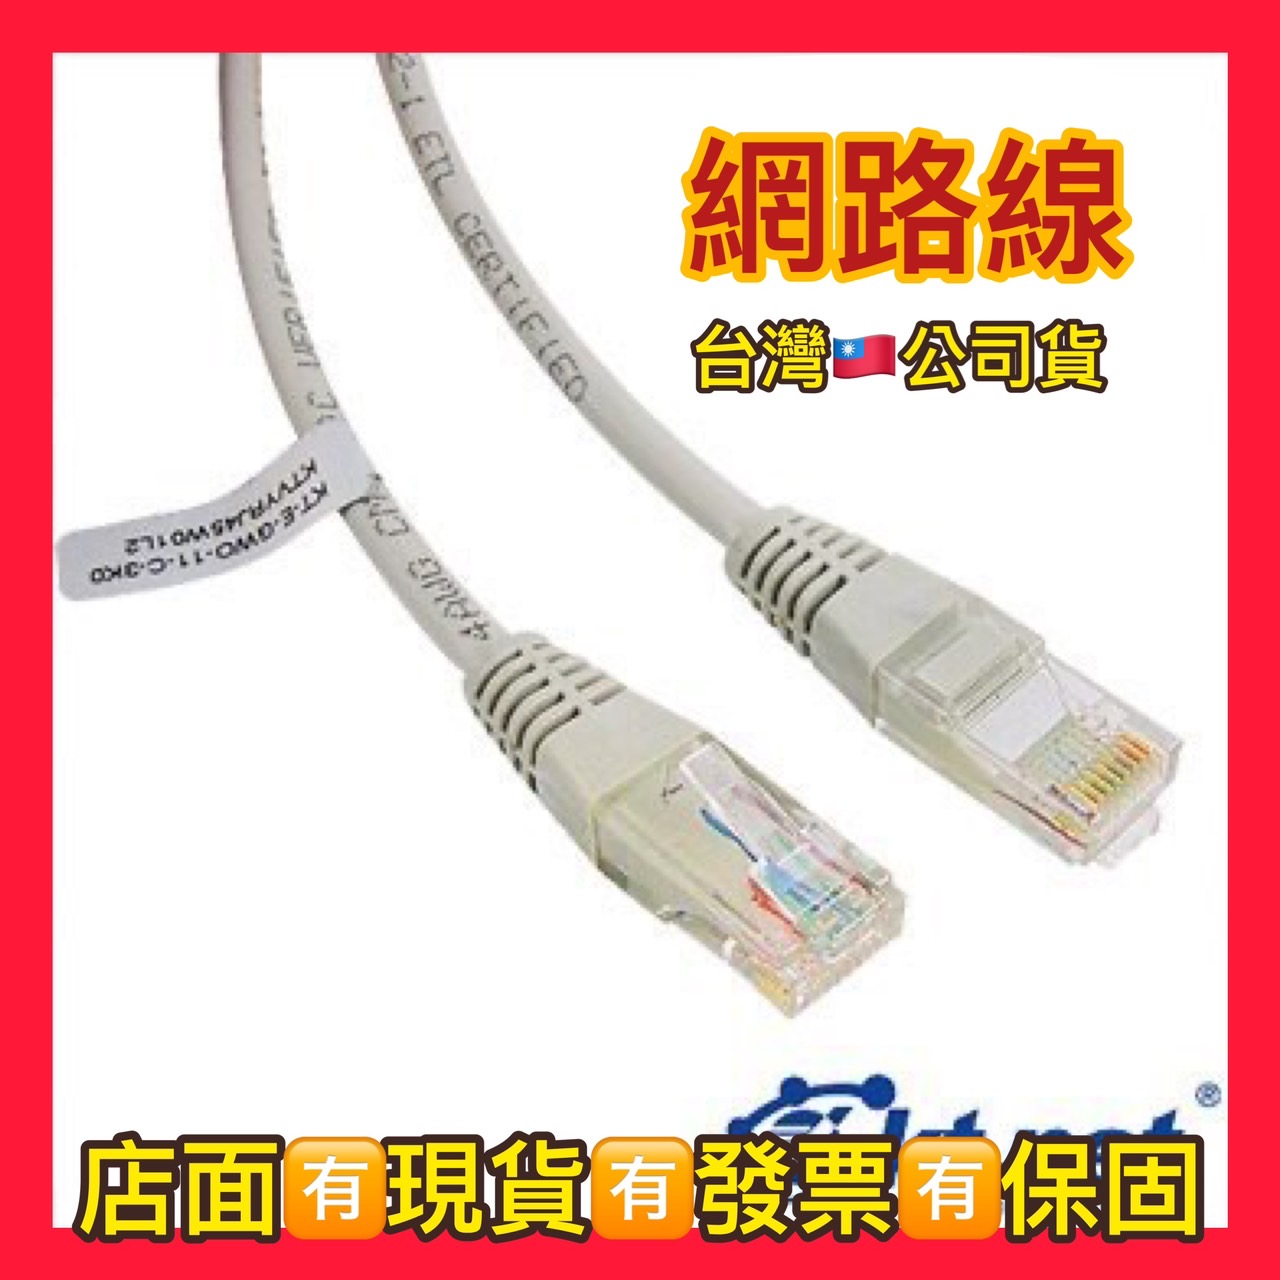 大阪サイトcat5 utp cable 1箱inspektorat.madiunkota.go.id